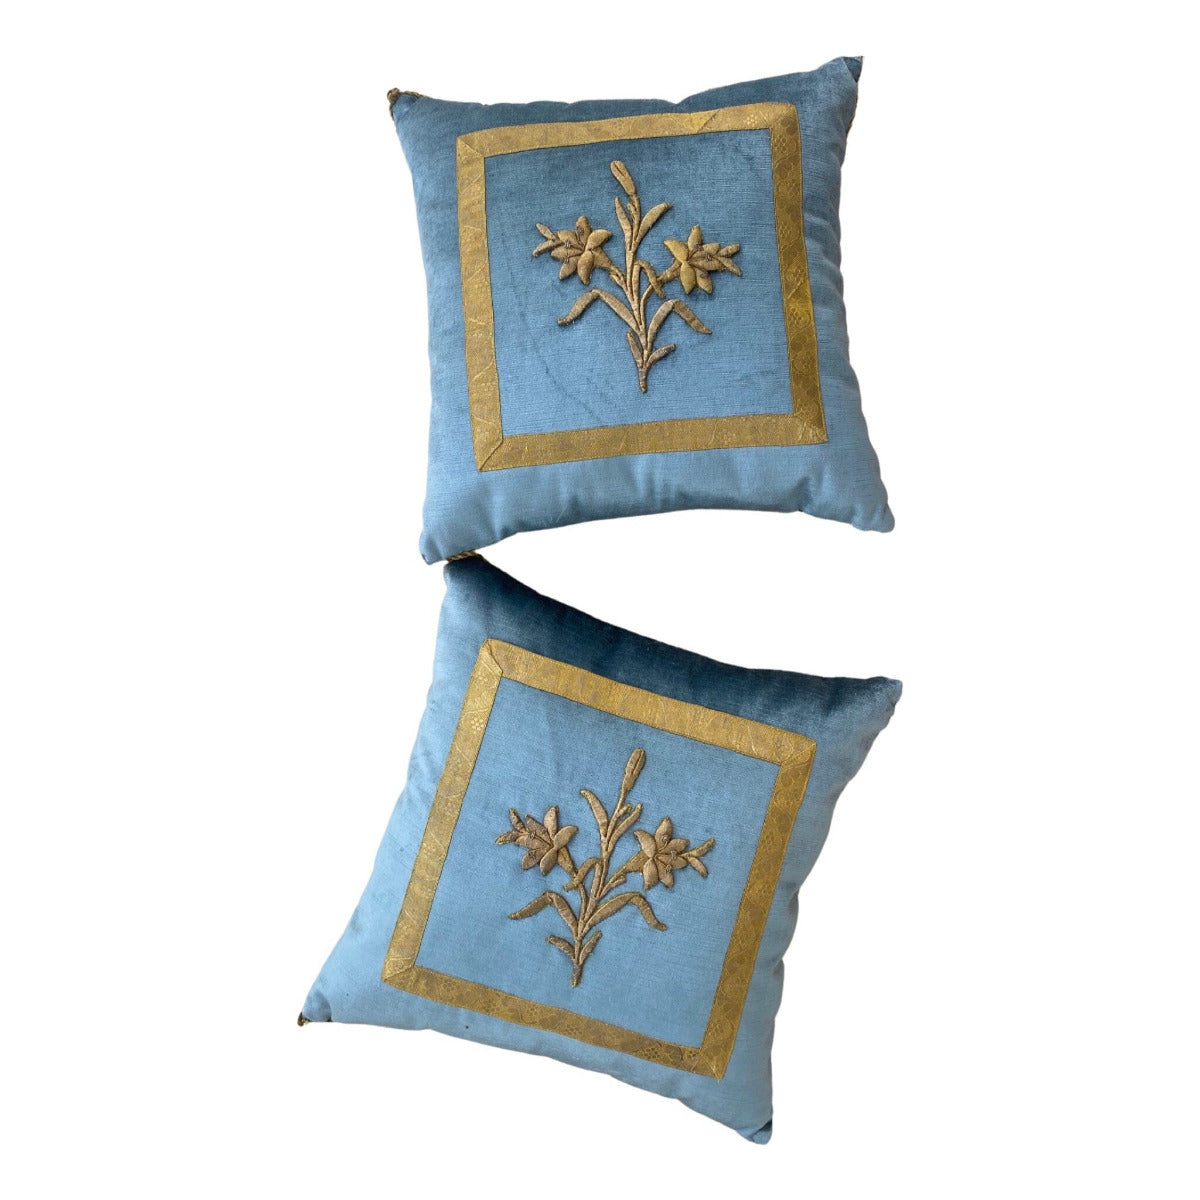 Antique European Raised Gold Metallic Embroidery (#E020323 | 18 x 18') New Pillows B. Viz Design 